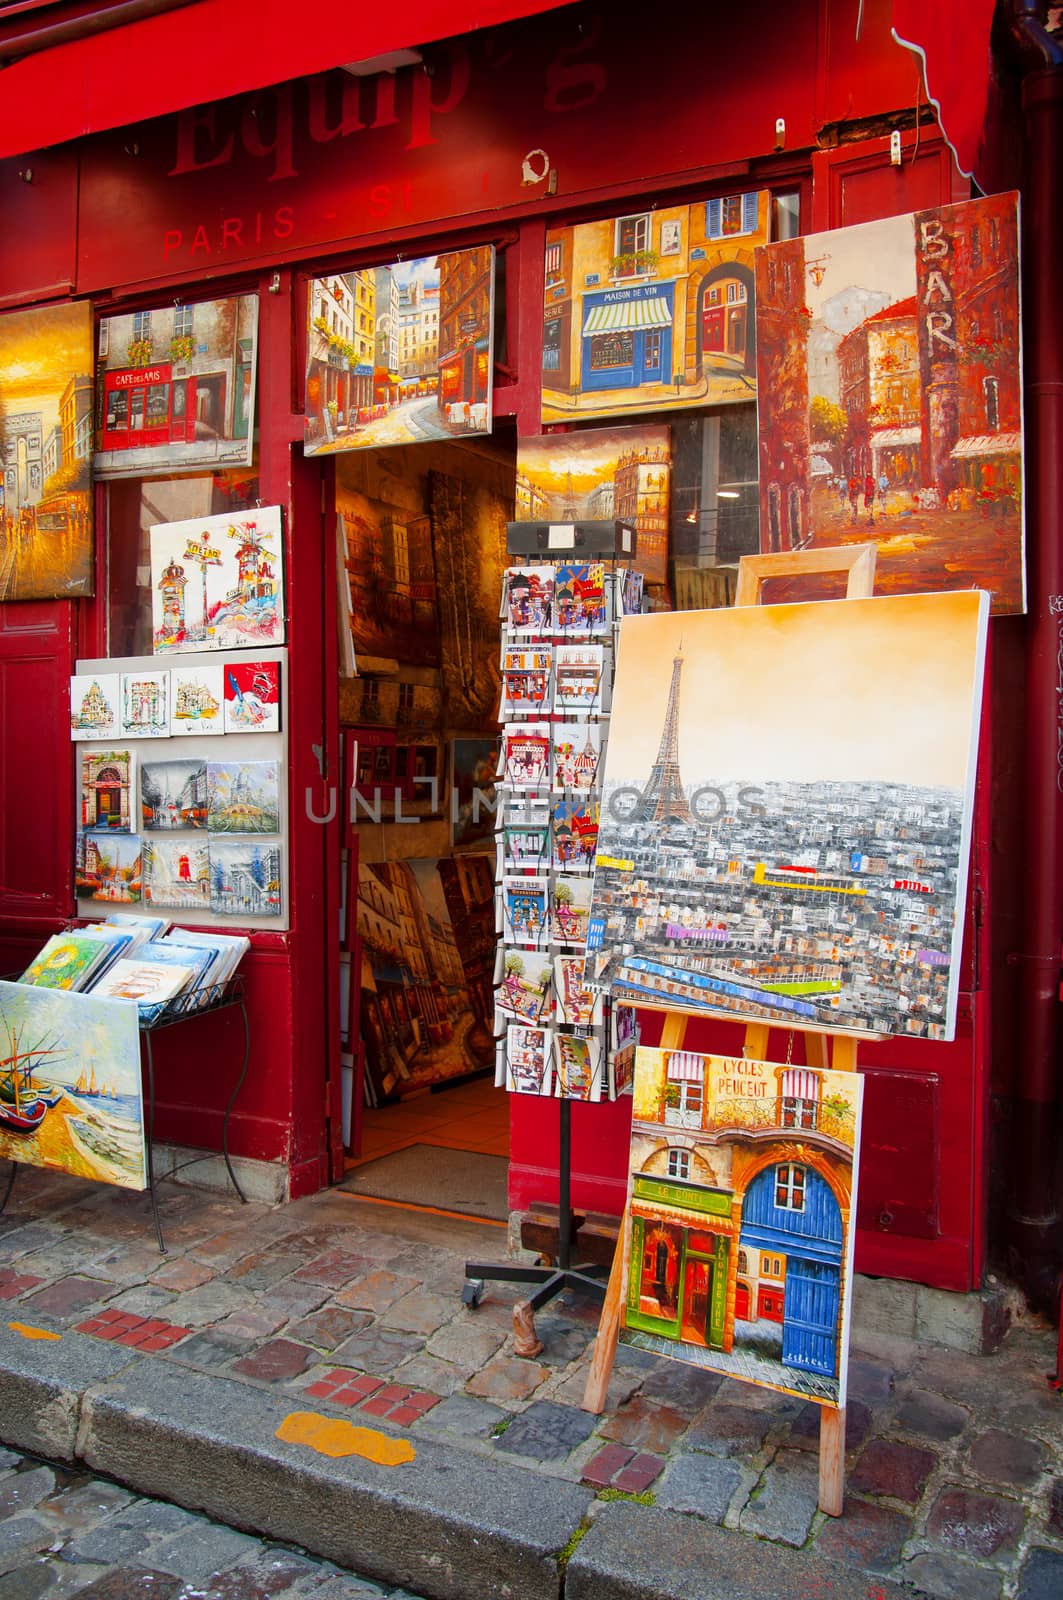 Paintings in Paris city